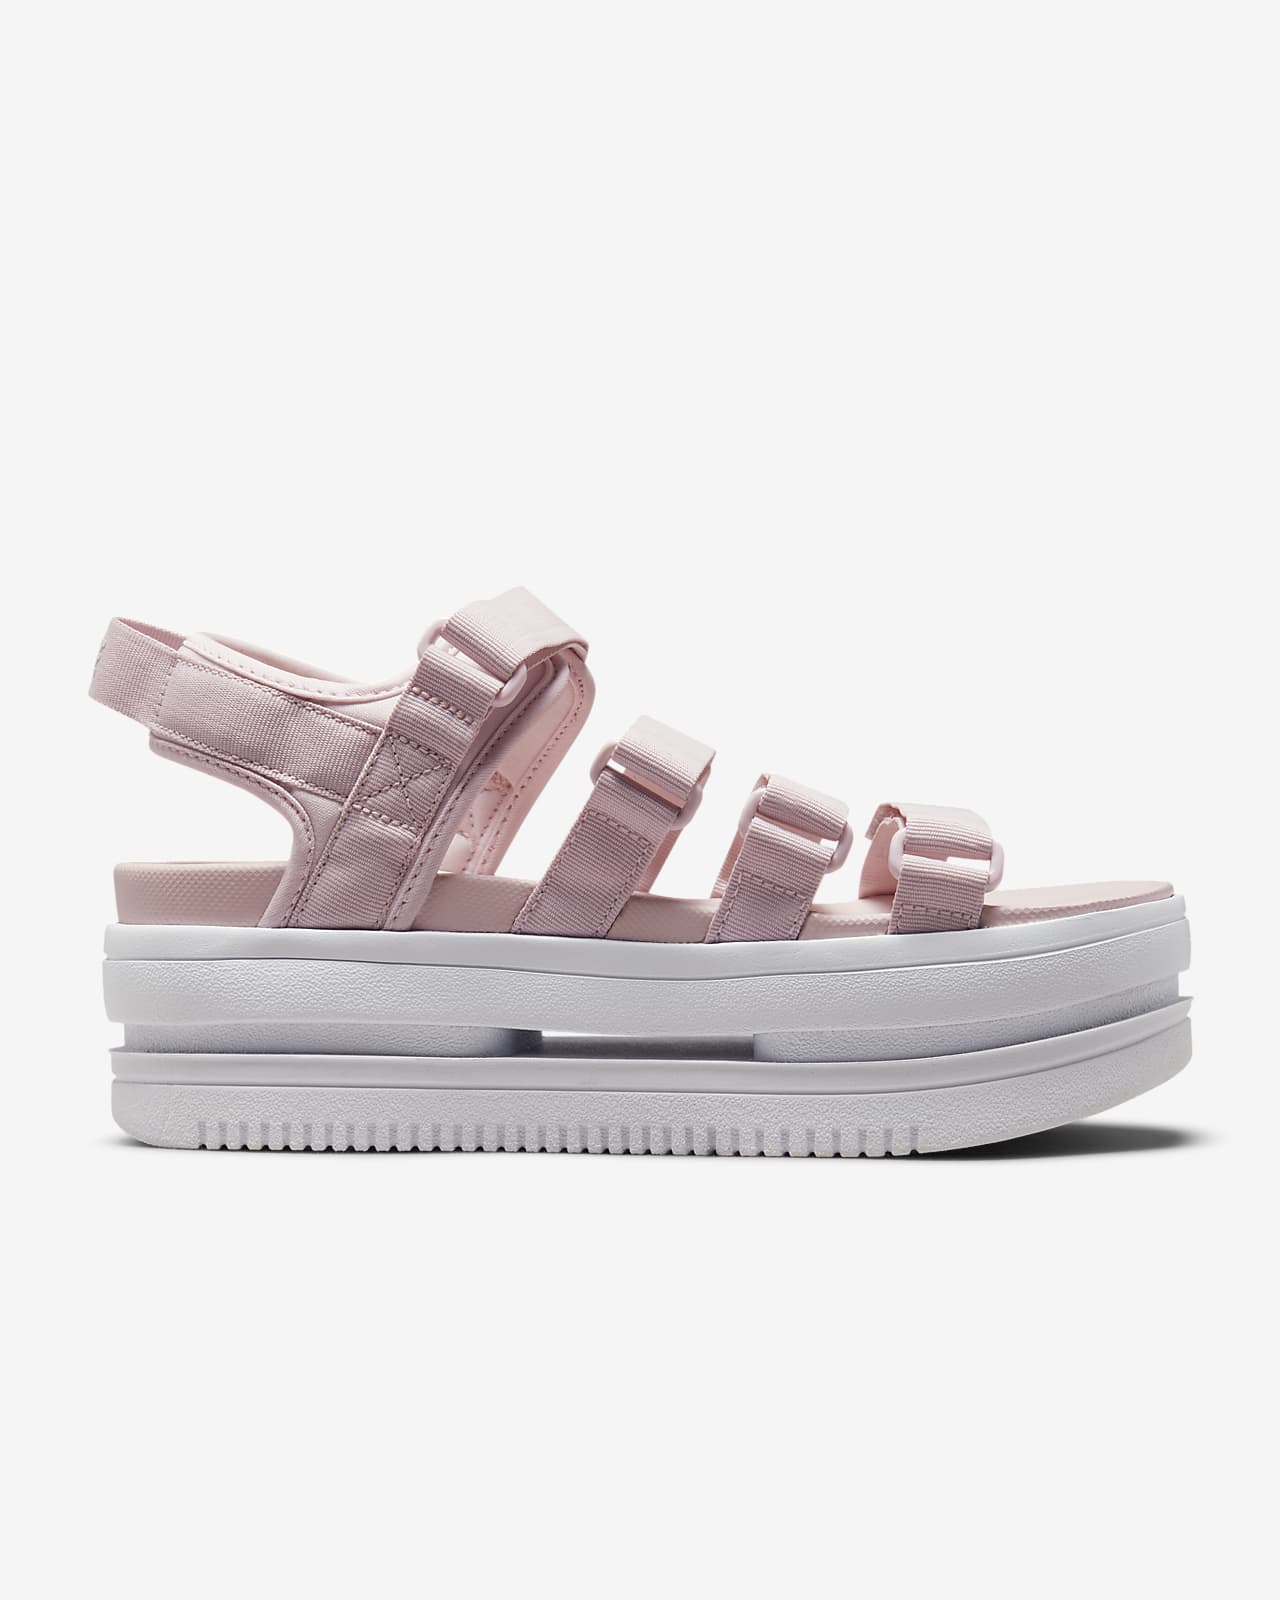 Nike Comfort Footbed Women's Size 10 Black Flip Flop Sandals | eBay